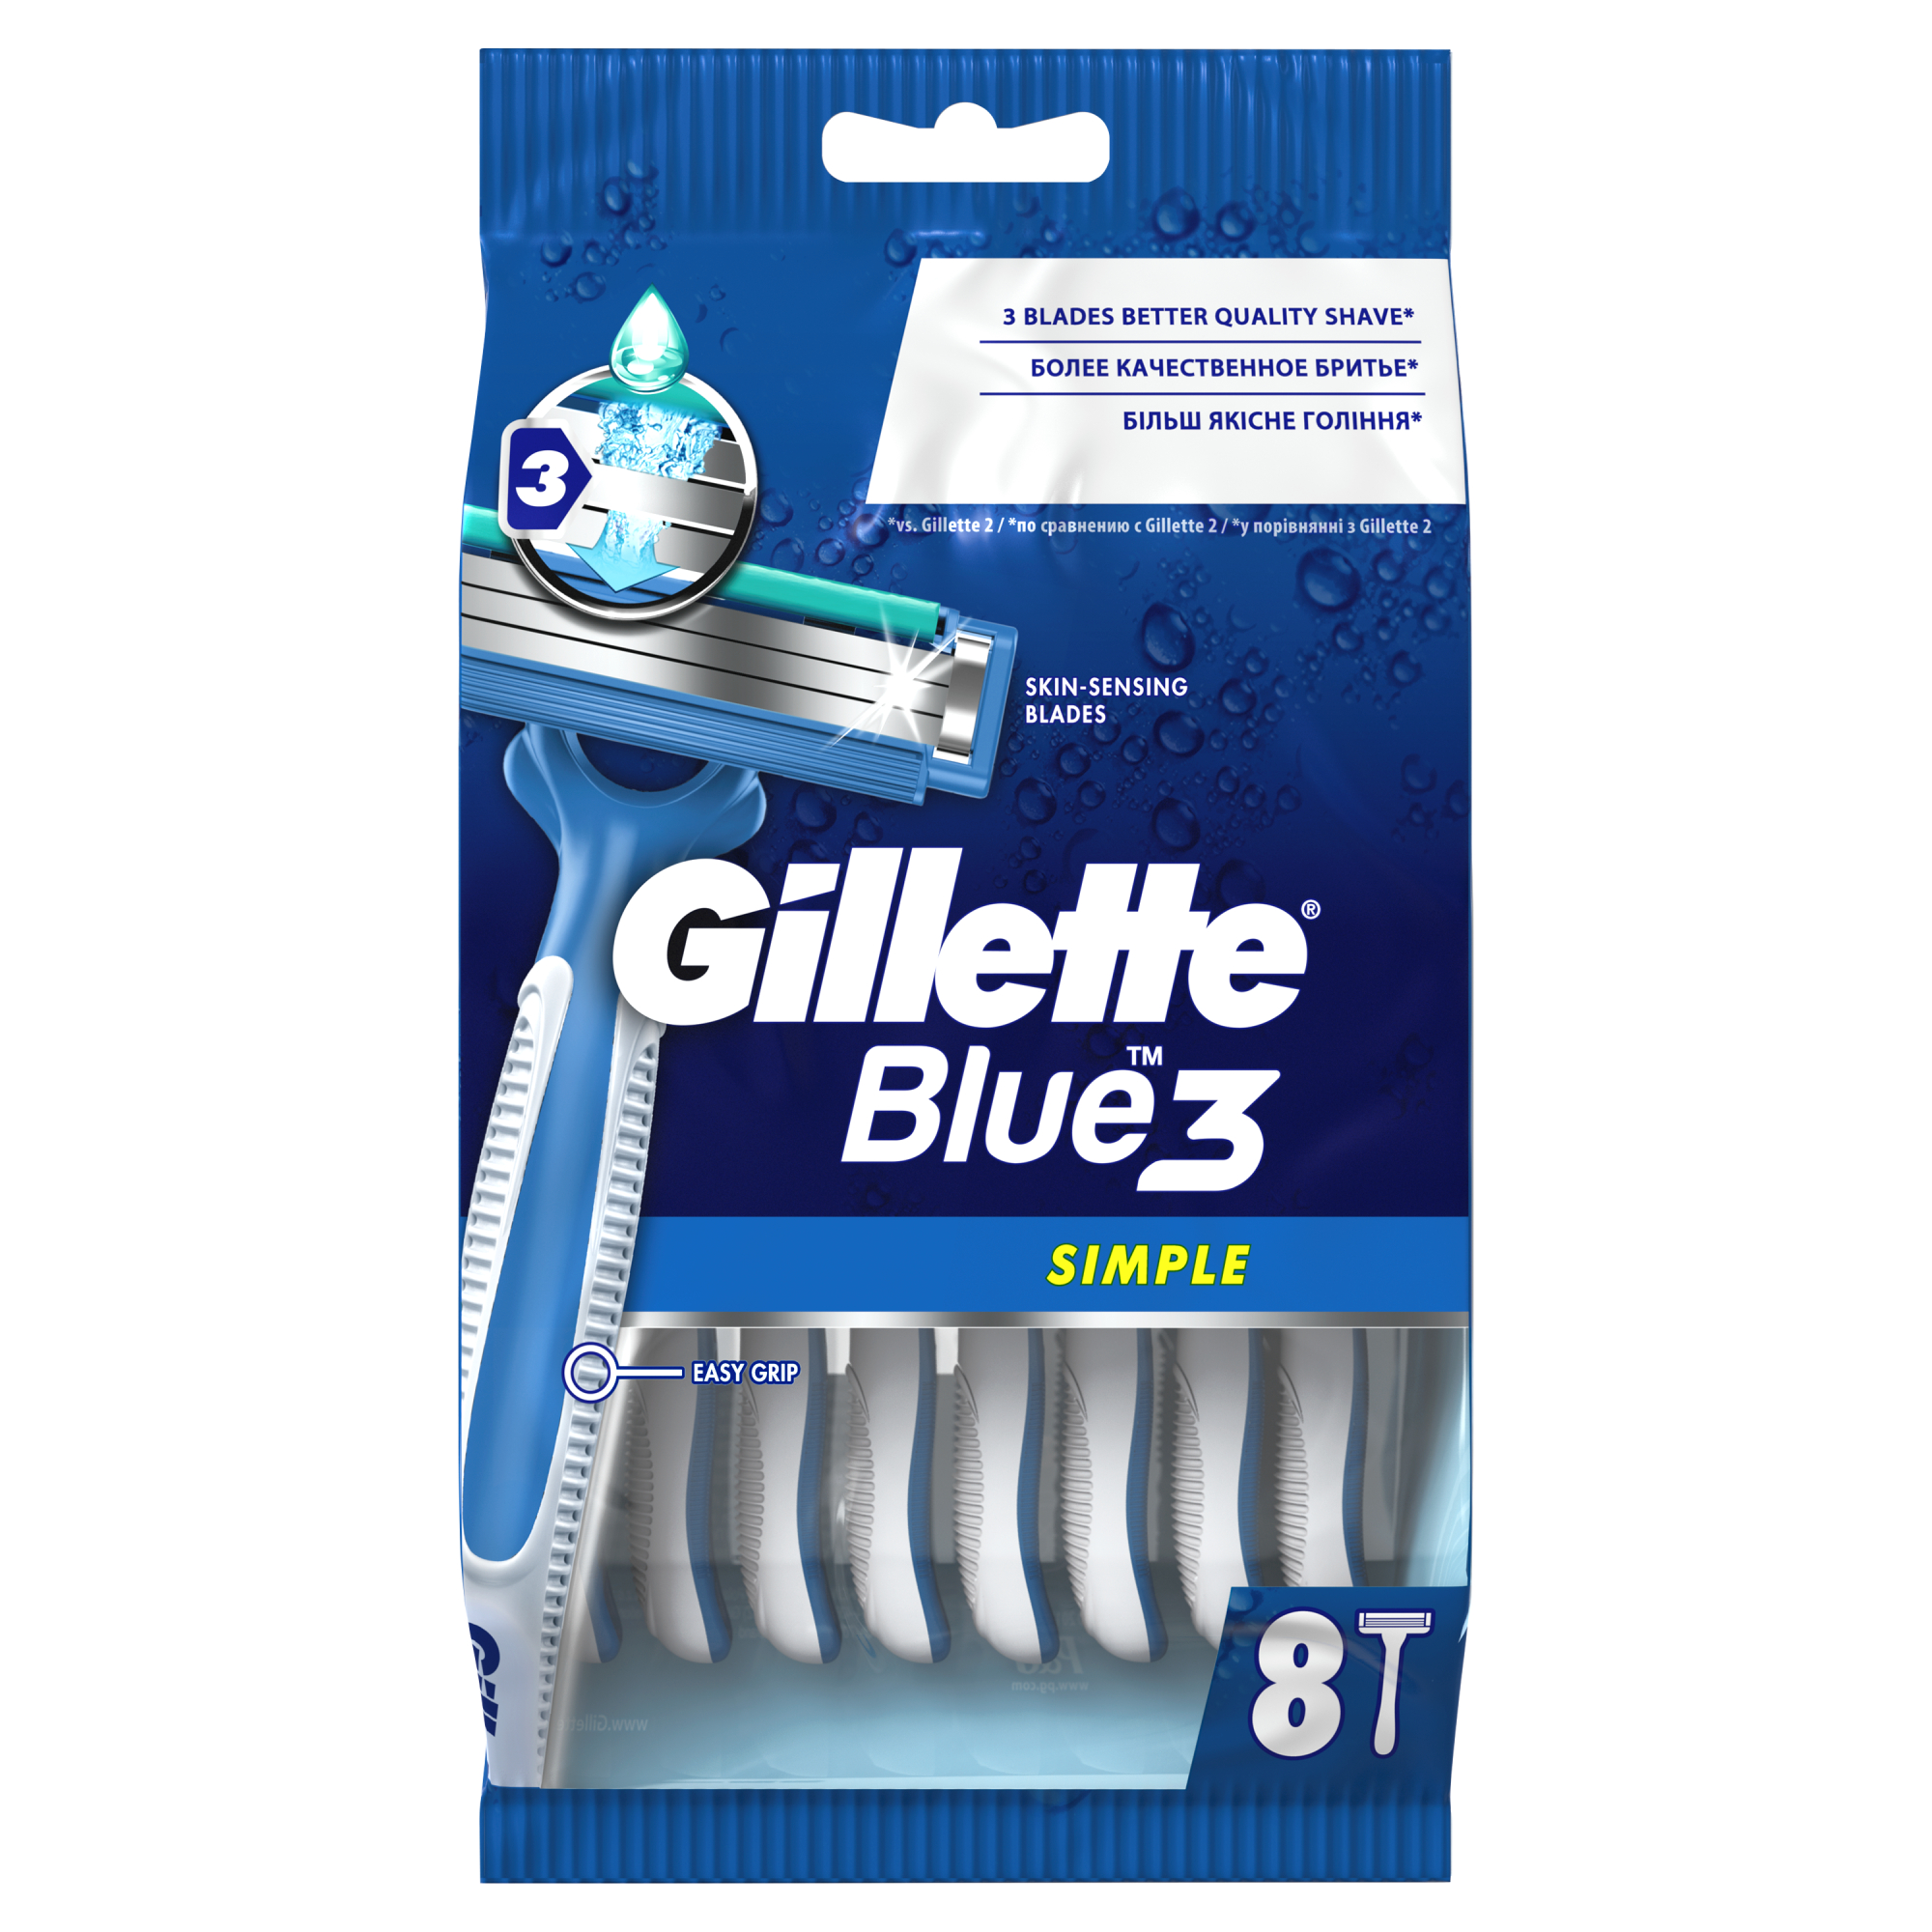 Одноразовые мужские бритвы Gillette Blue3 Simple, с 3 лезвиями, 8, фиксированная головка одноразовые мужские бритвы gillette blue2 с 2 лезвиями 10 фиксированная головка